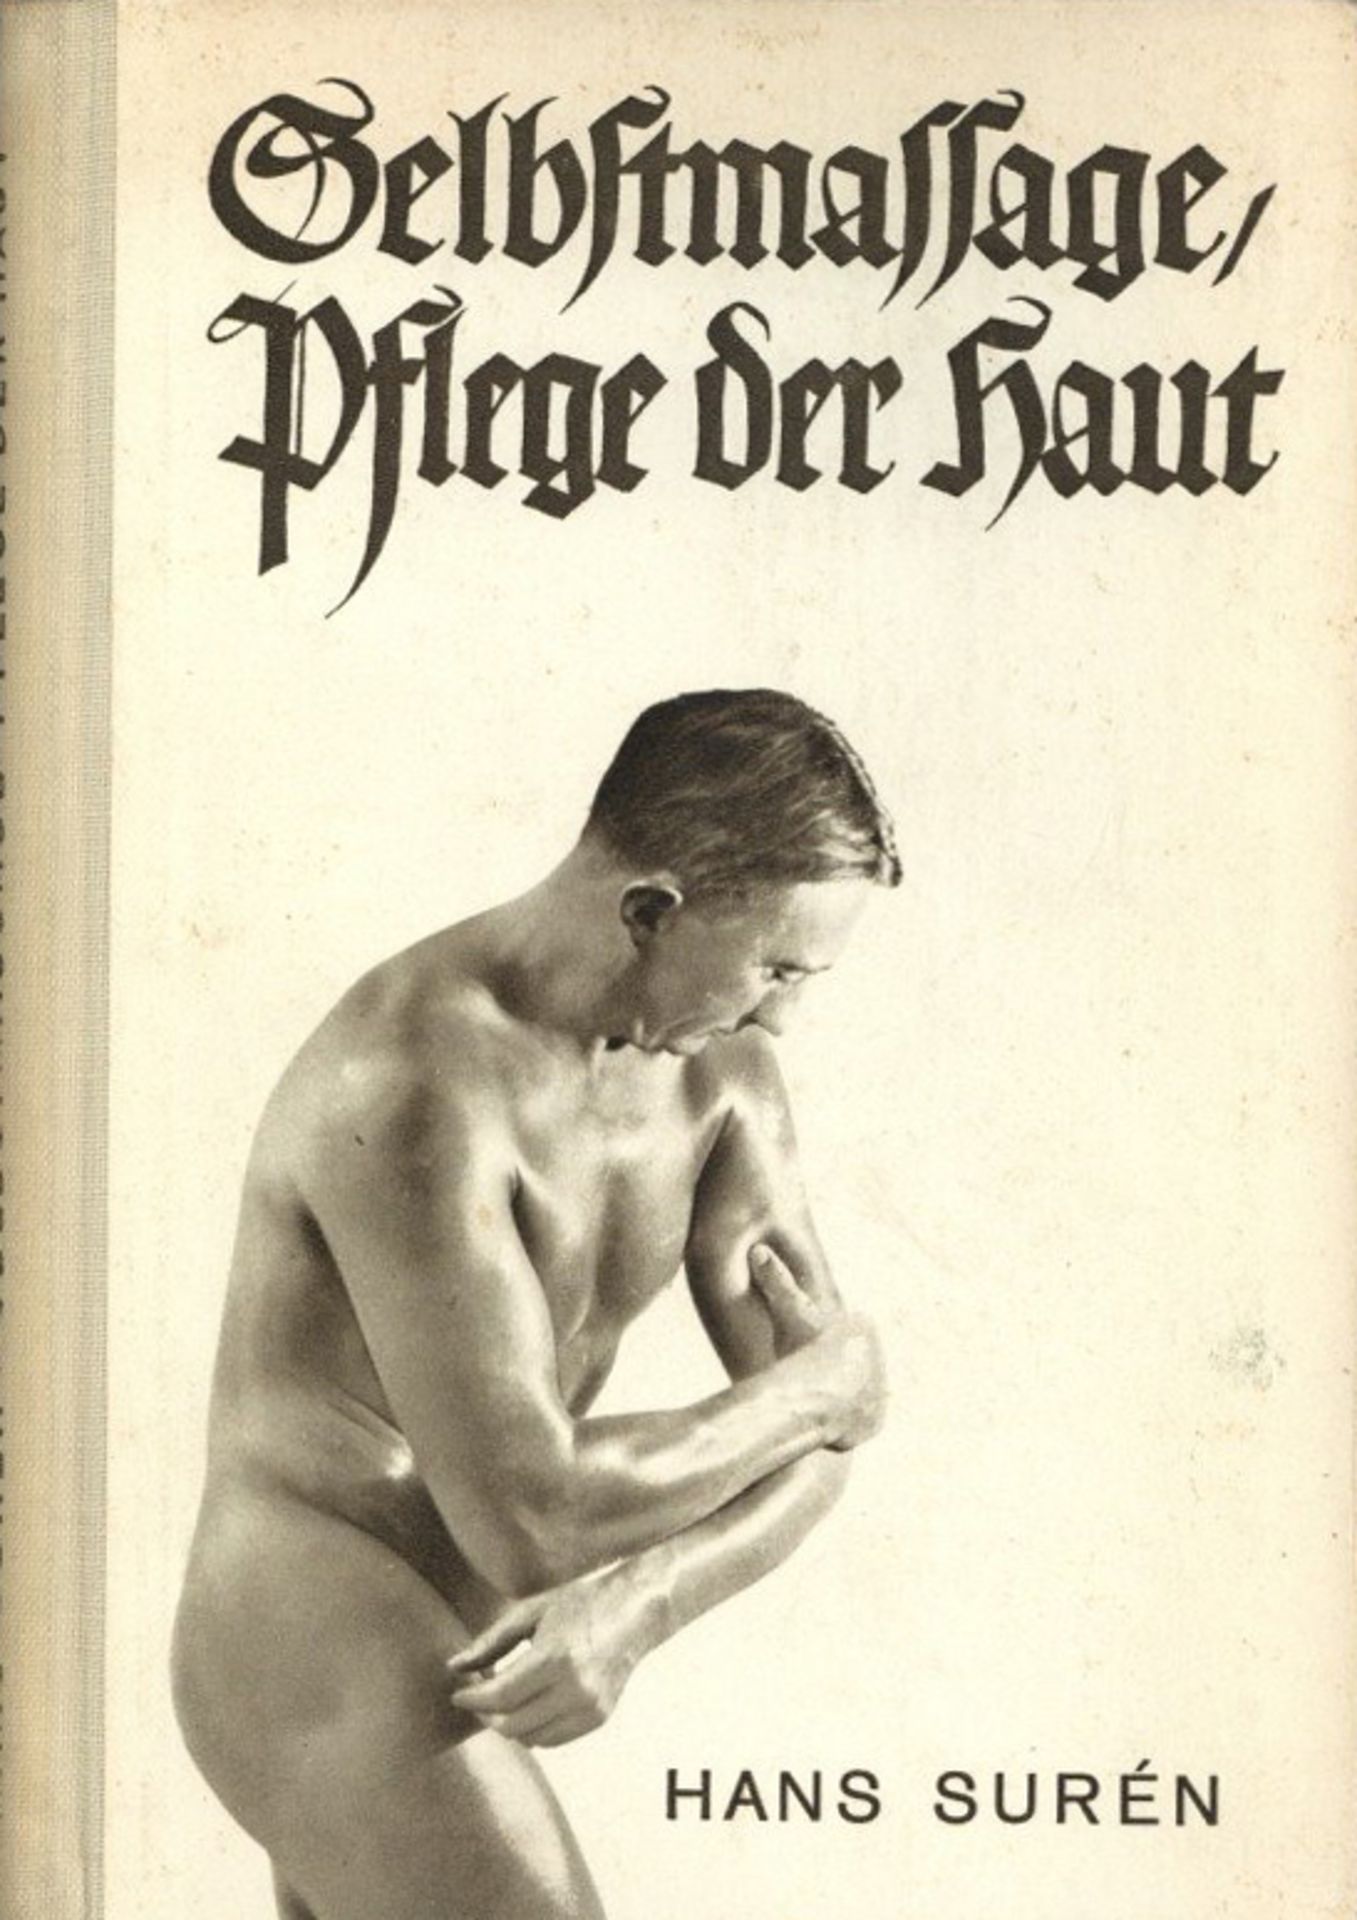 Erotik Buch Selbstmassage Hrsg. Suren, Hans Franckhsche Verlagshandlung Stuttgart 1939, 161 S. mit